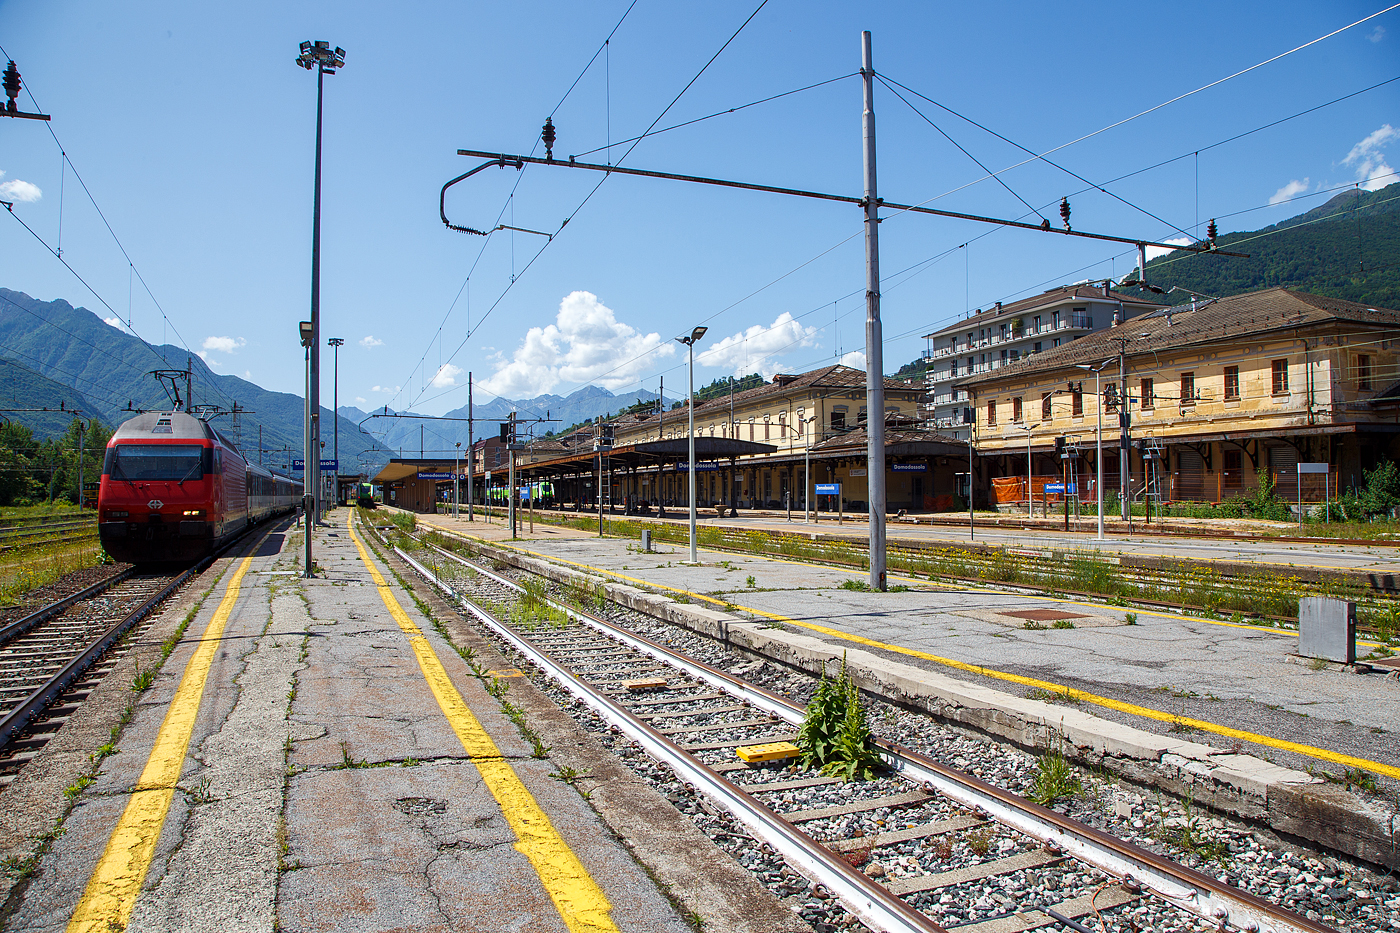 Der Bahnhof Domodossola (italienisch Stazione di Domodossola) am 26 Mai 2023 vom Gleis 6 in südlicher Blickrichtung. 

Der Bahnhof wurde am 9. September 1888 zusammen mit dem Rest des Abschnitts Domodossola - Arona der Eisenbahnlinie Mailand - Domodossola eröffnet. Es wurde im Rahmen eines seit den 1870er Jahren geplanten Eisenbahnbauprojekts gebaut. Ziel des Projekts war es, die Isolation des Ossola- Tals zu überwinden, indem es mit Novara und Turin verbunden wurde.

Am 1. Juni 1906 wurde Domodossola durch die Eröffnung des Simplon-Tunnels und der durch ihn fahrenden Brig-Domodossola-Eisenbahn zu einer internationalen Einrichtung ausgebaut.
